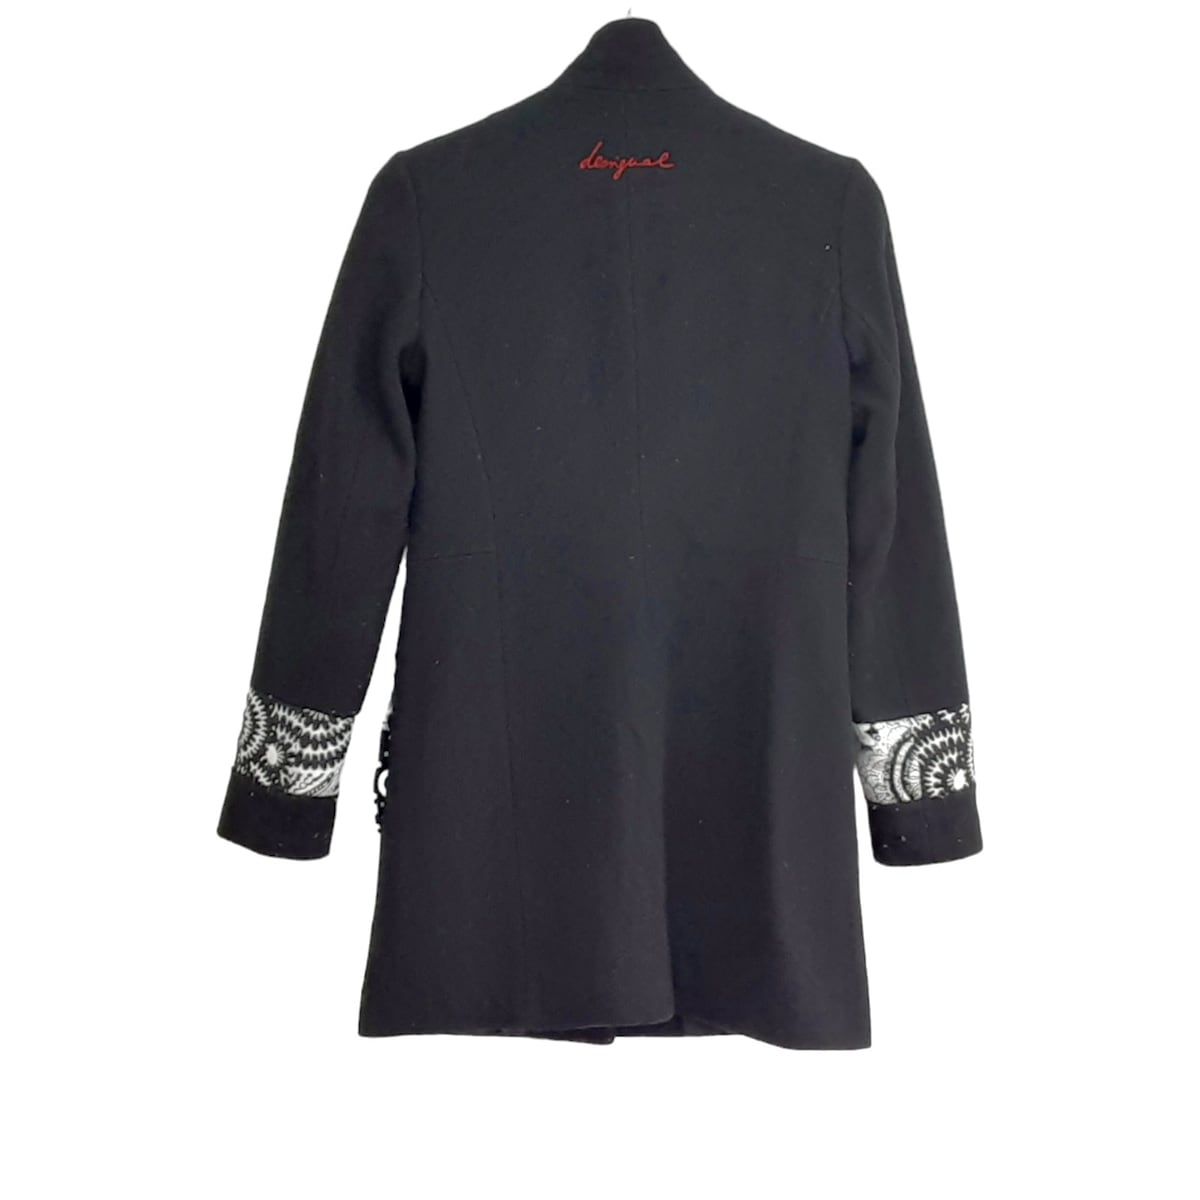 Desigual(デシグアル) コート サイズ36 M レディース美品 - 黒×白 長袖 